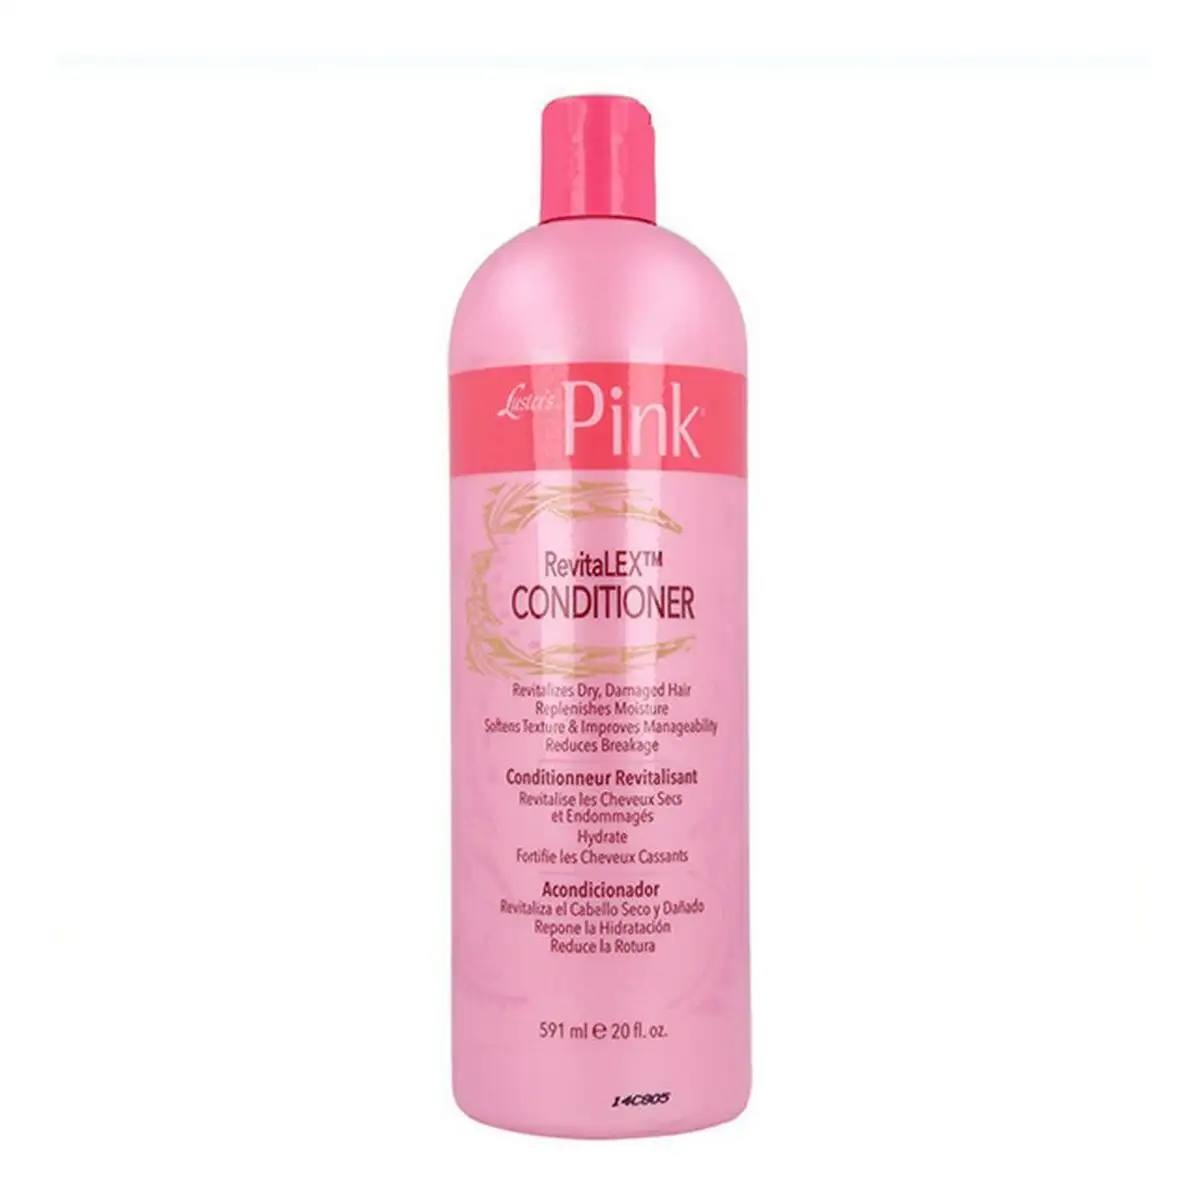 Apres shampooing pink luster s 591 ml _6513. DIAYTAR SENEGAL - Votre Destination pour un Shopping Inégalé. Naviguez à travers notre sélection minutieuse pour trouver des produits qui répondent à tous vos besoins.